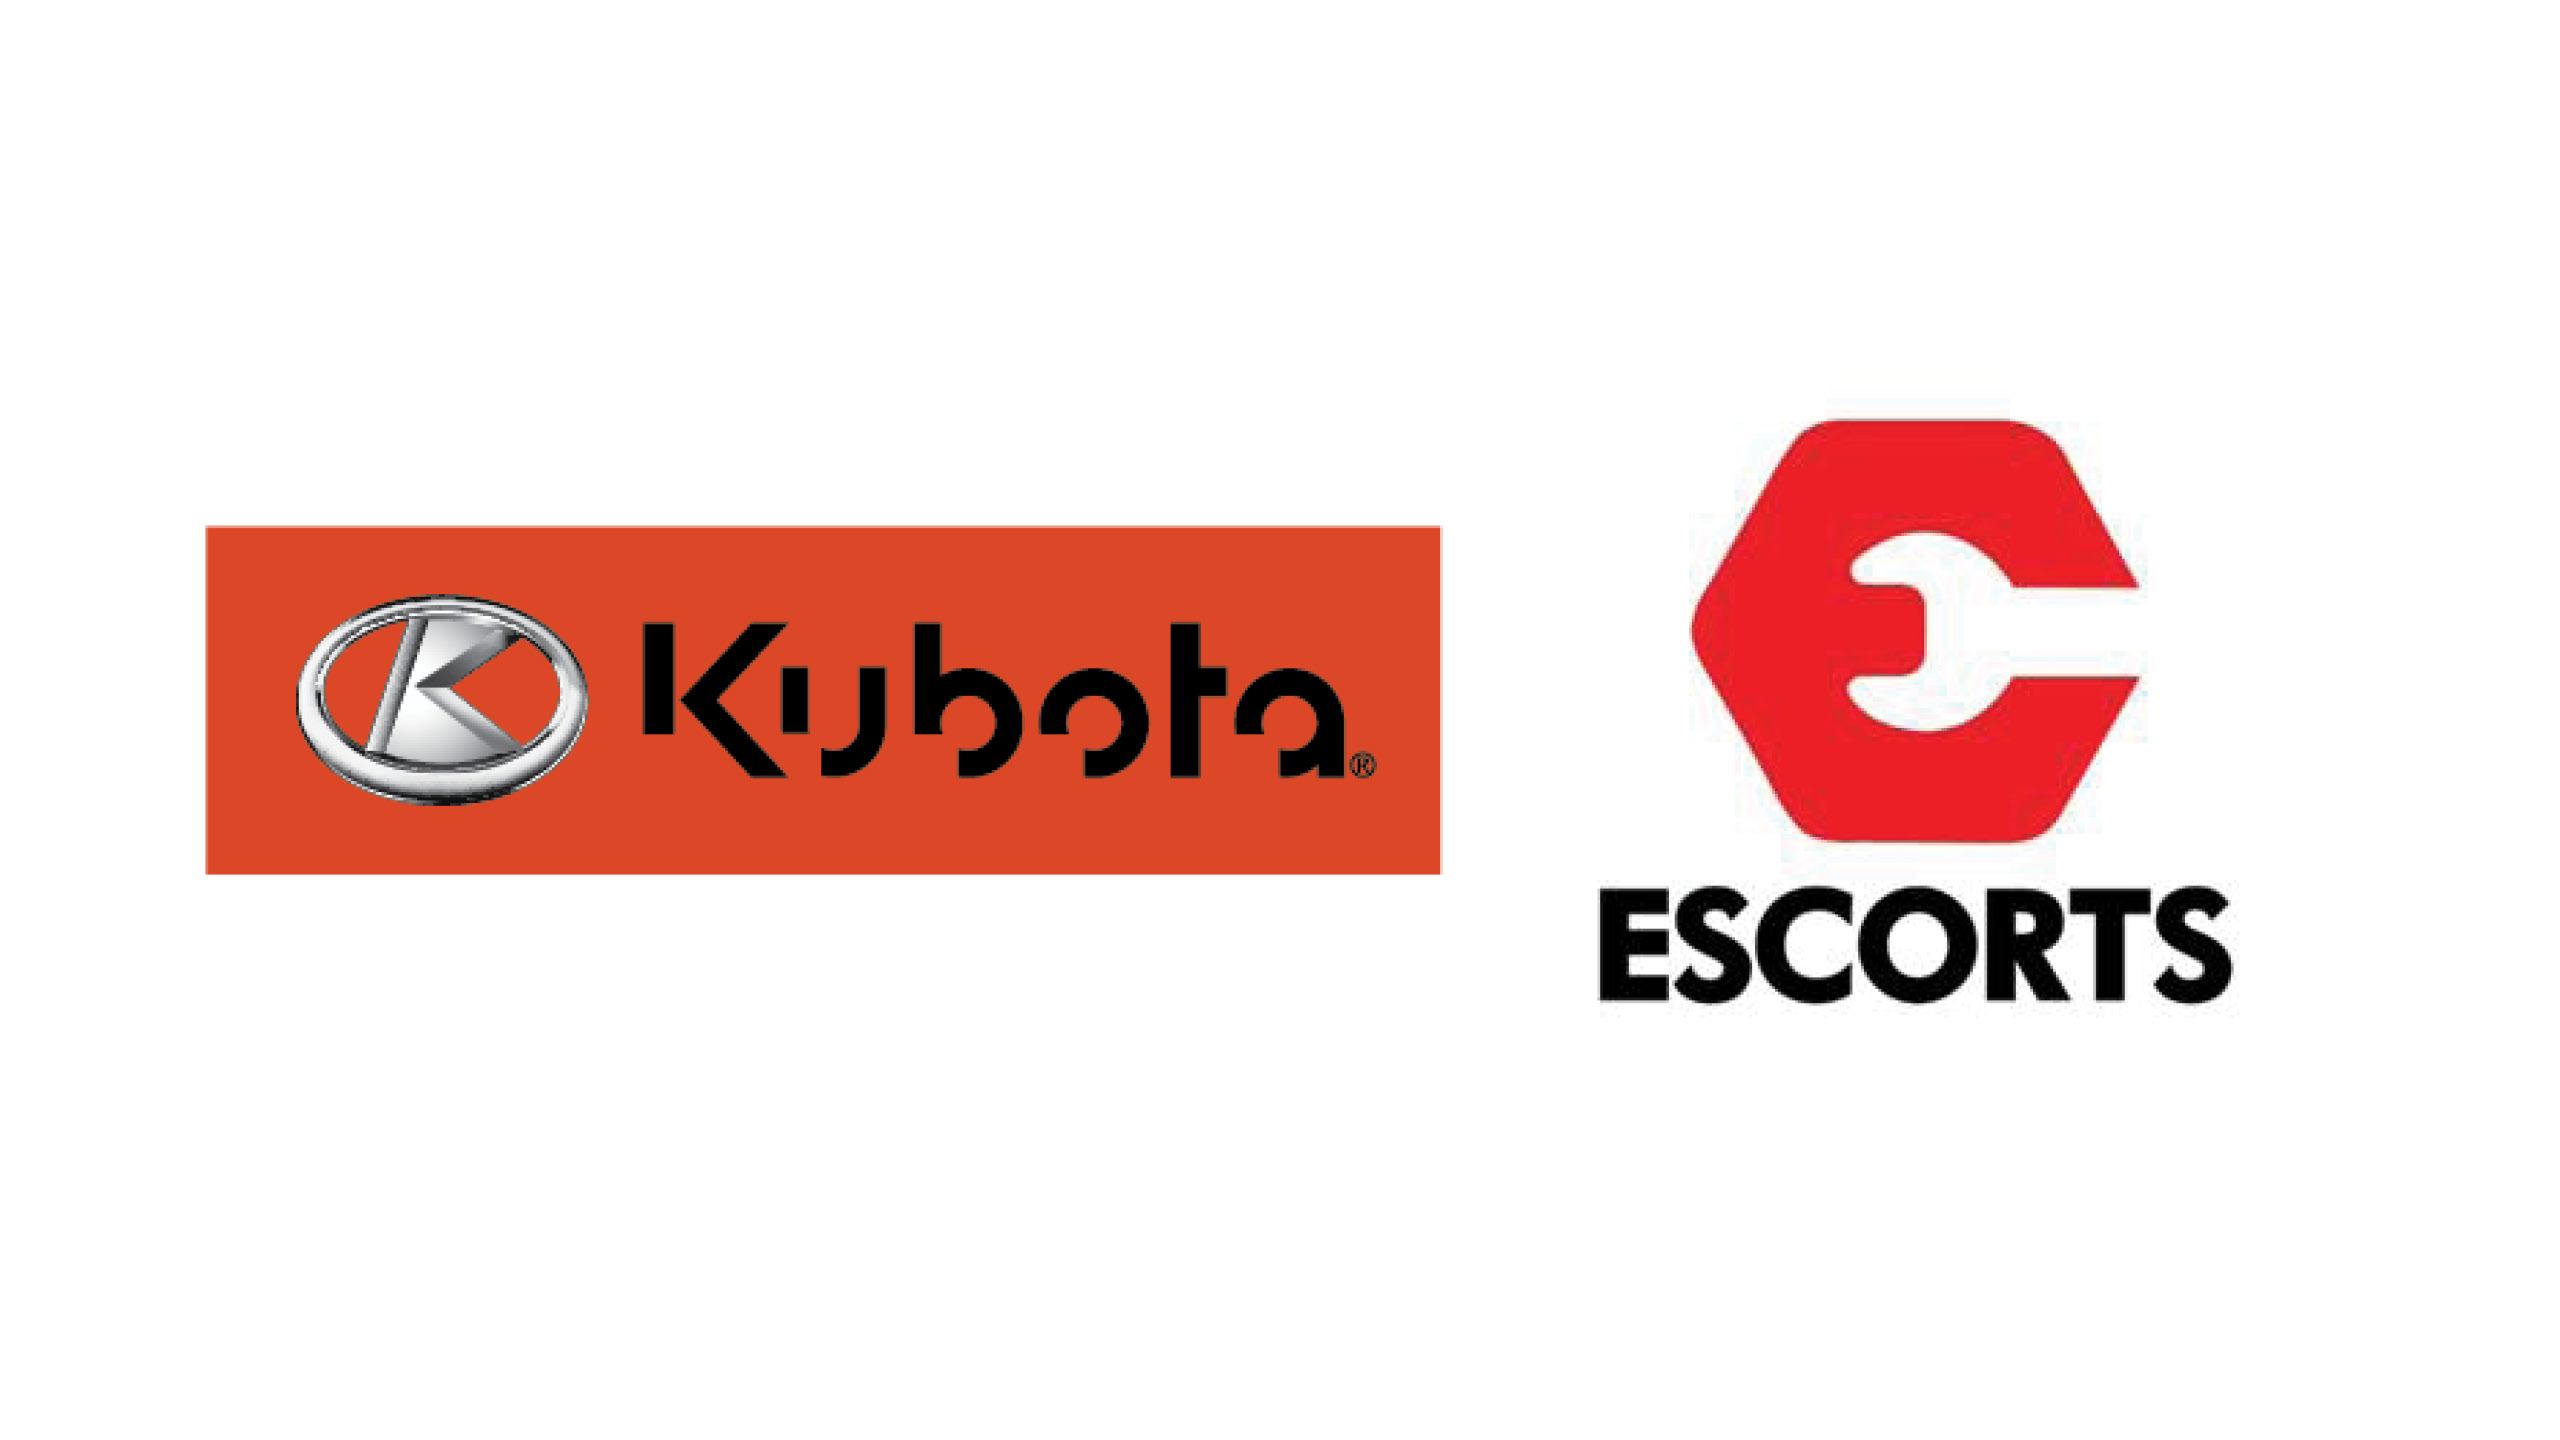 kubota escorts logos